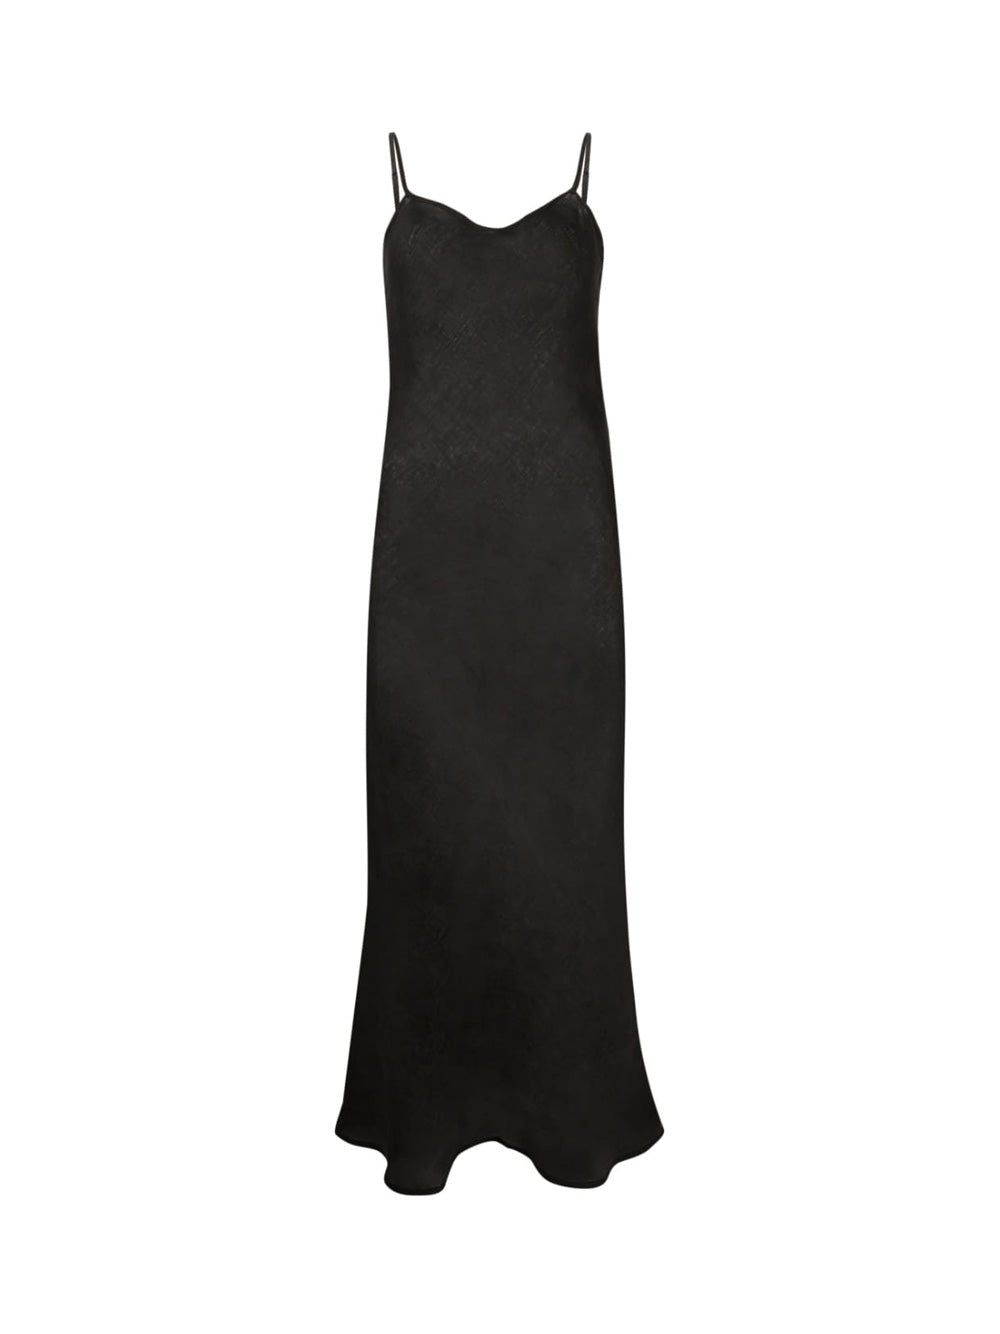 Dydine Black Strappy Dress